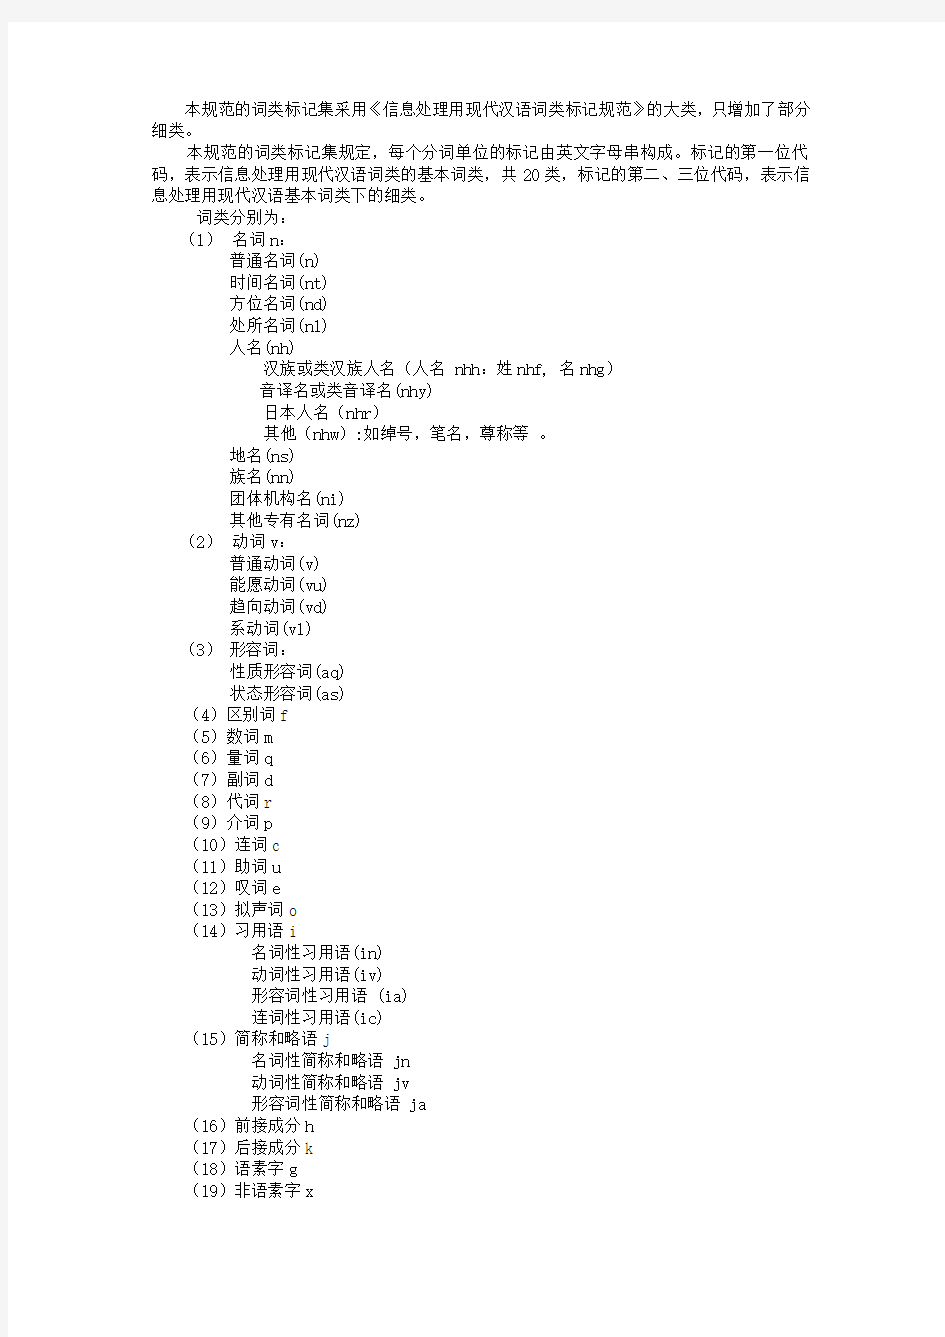 973当代汉语文本语料库分词、词性标注加工规范